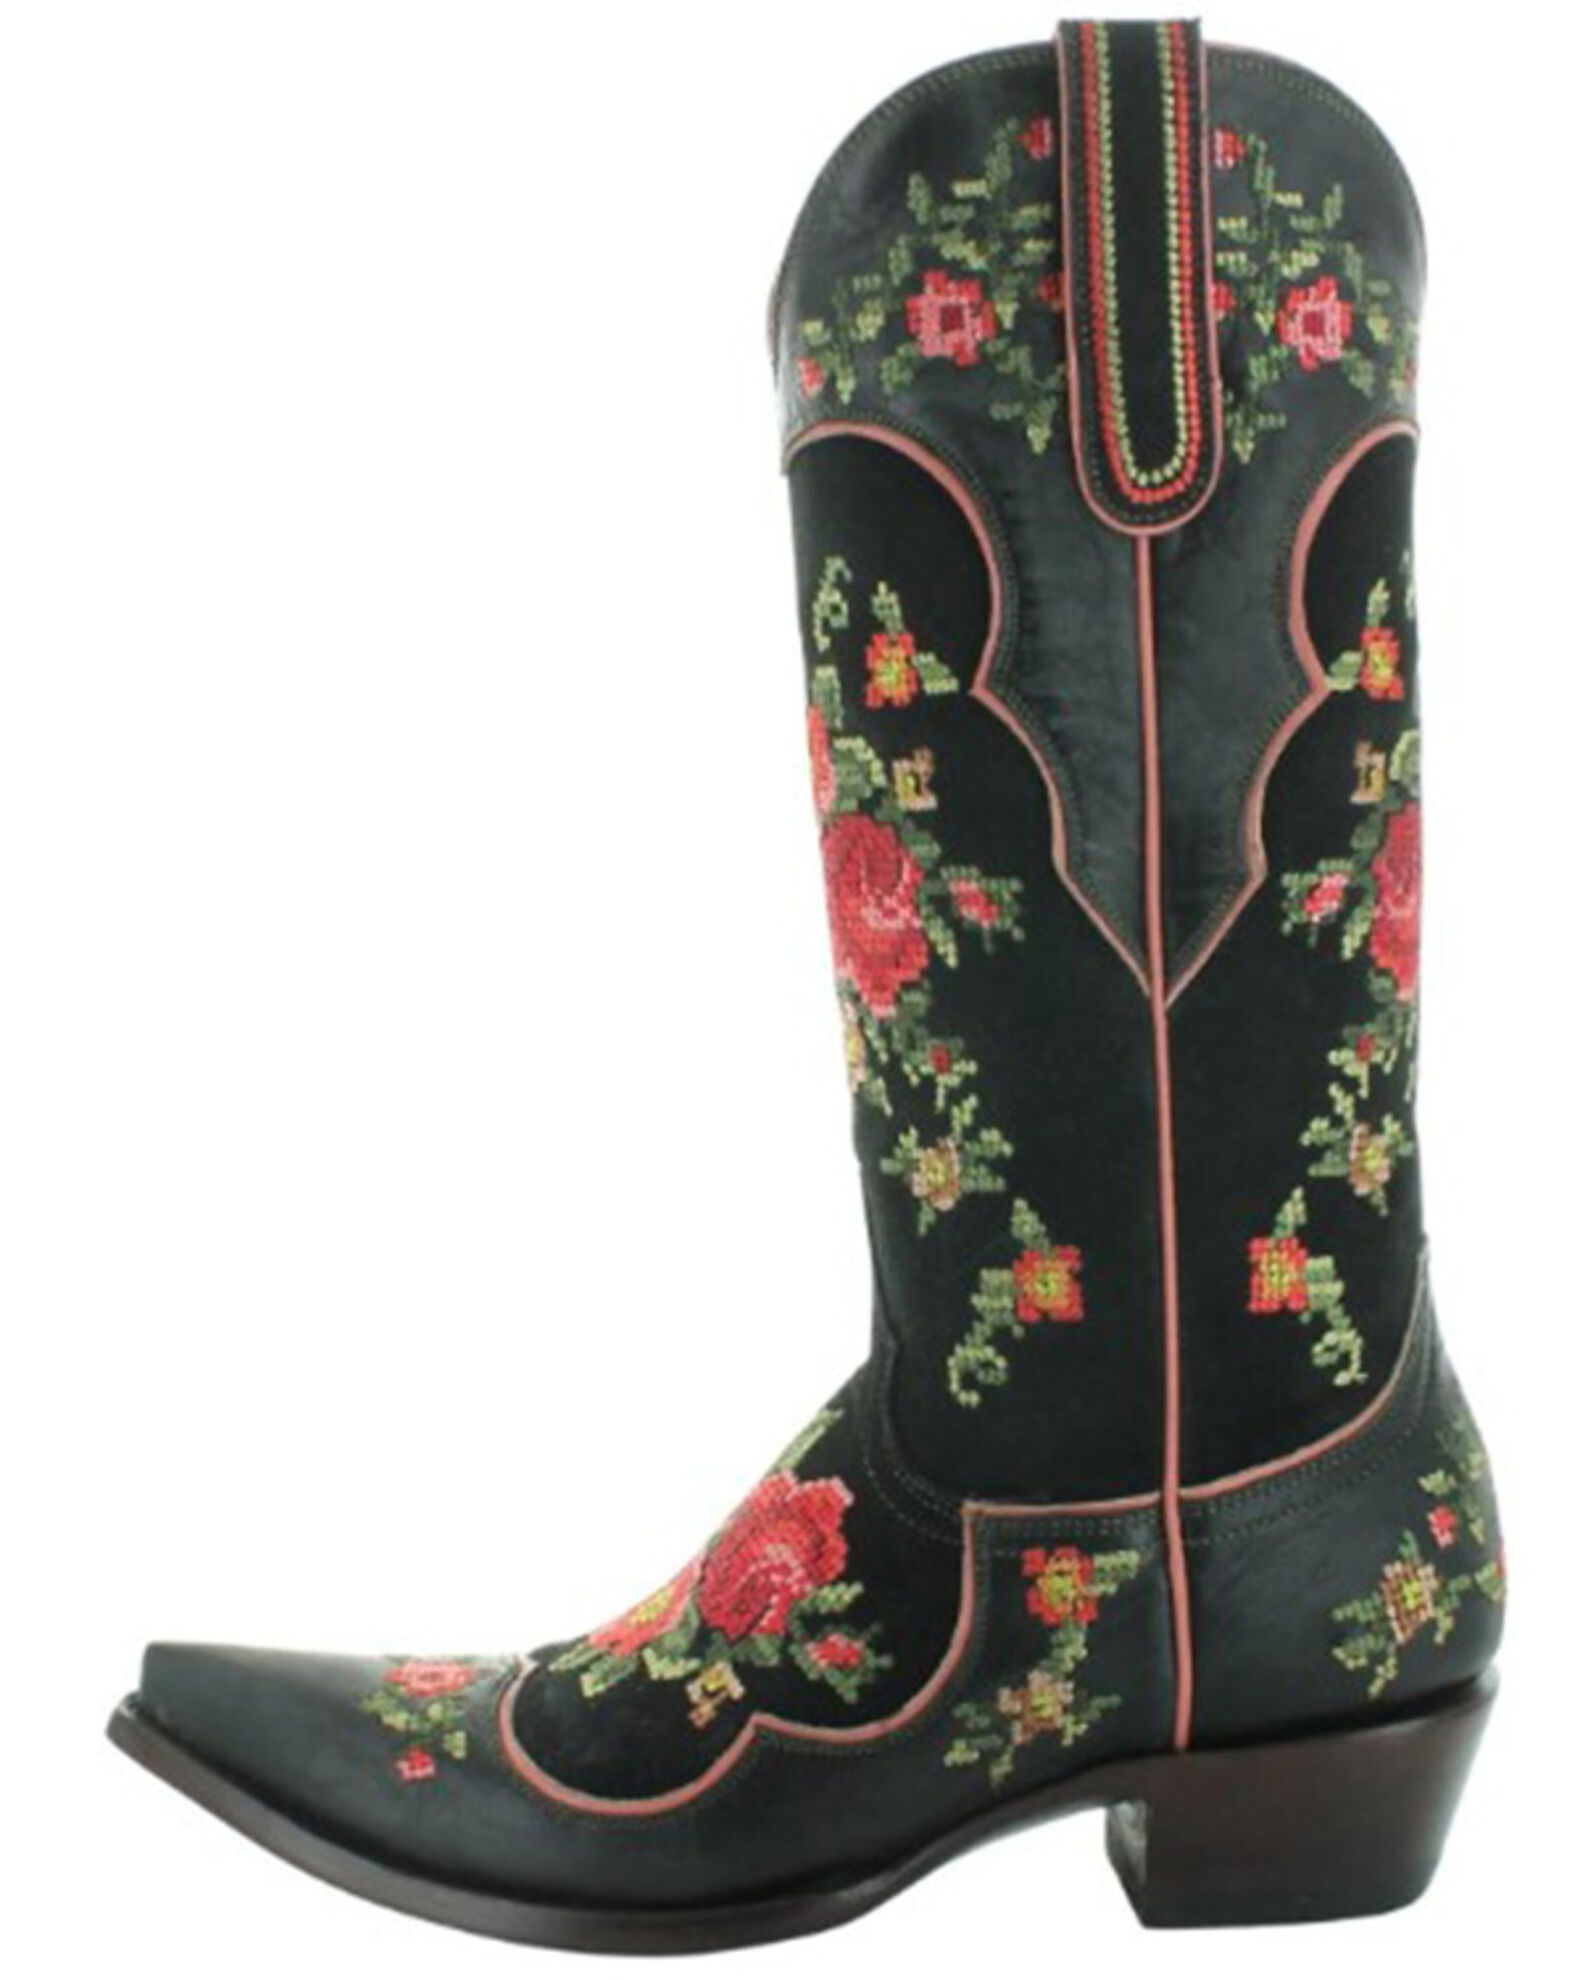 Old Gringo Women's Bridgette Western Boots - Snip Toe